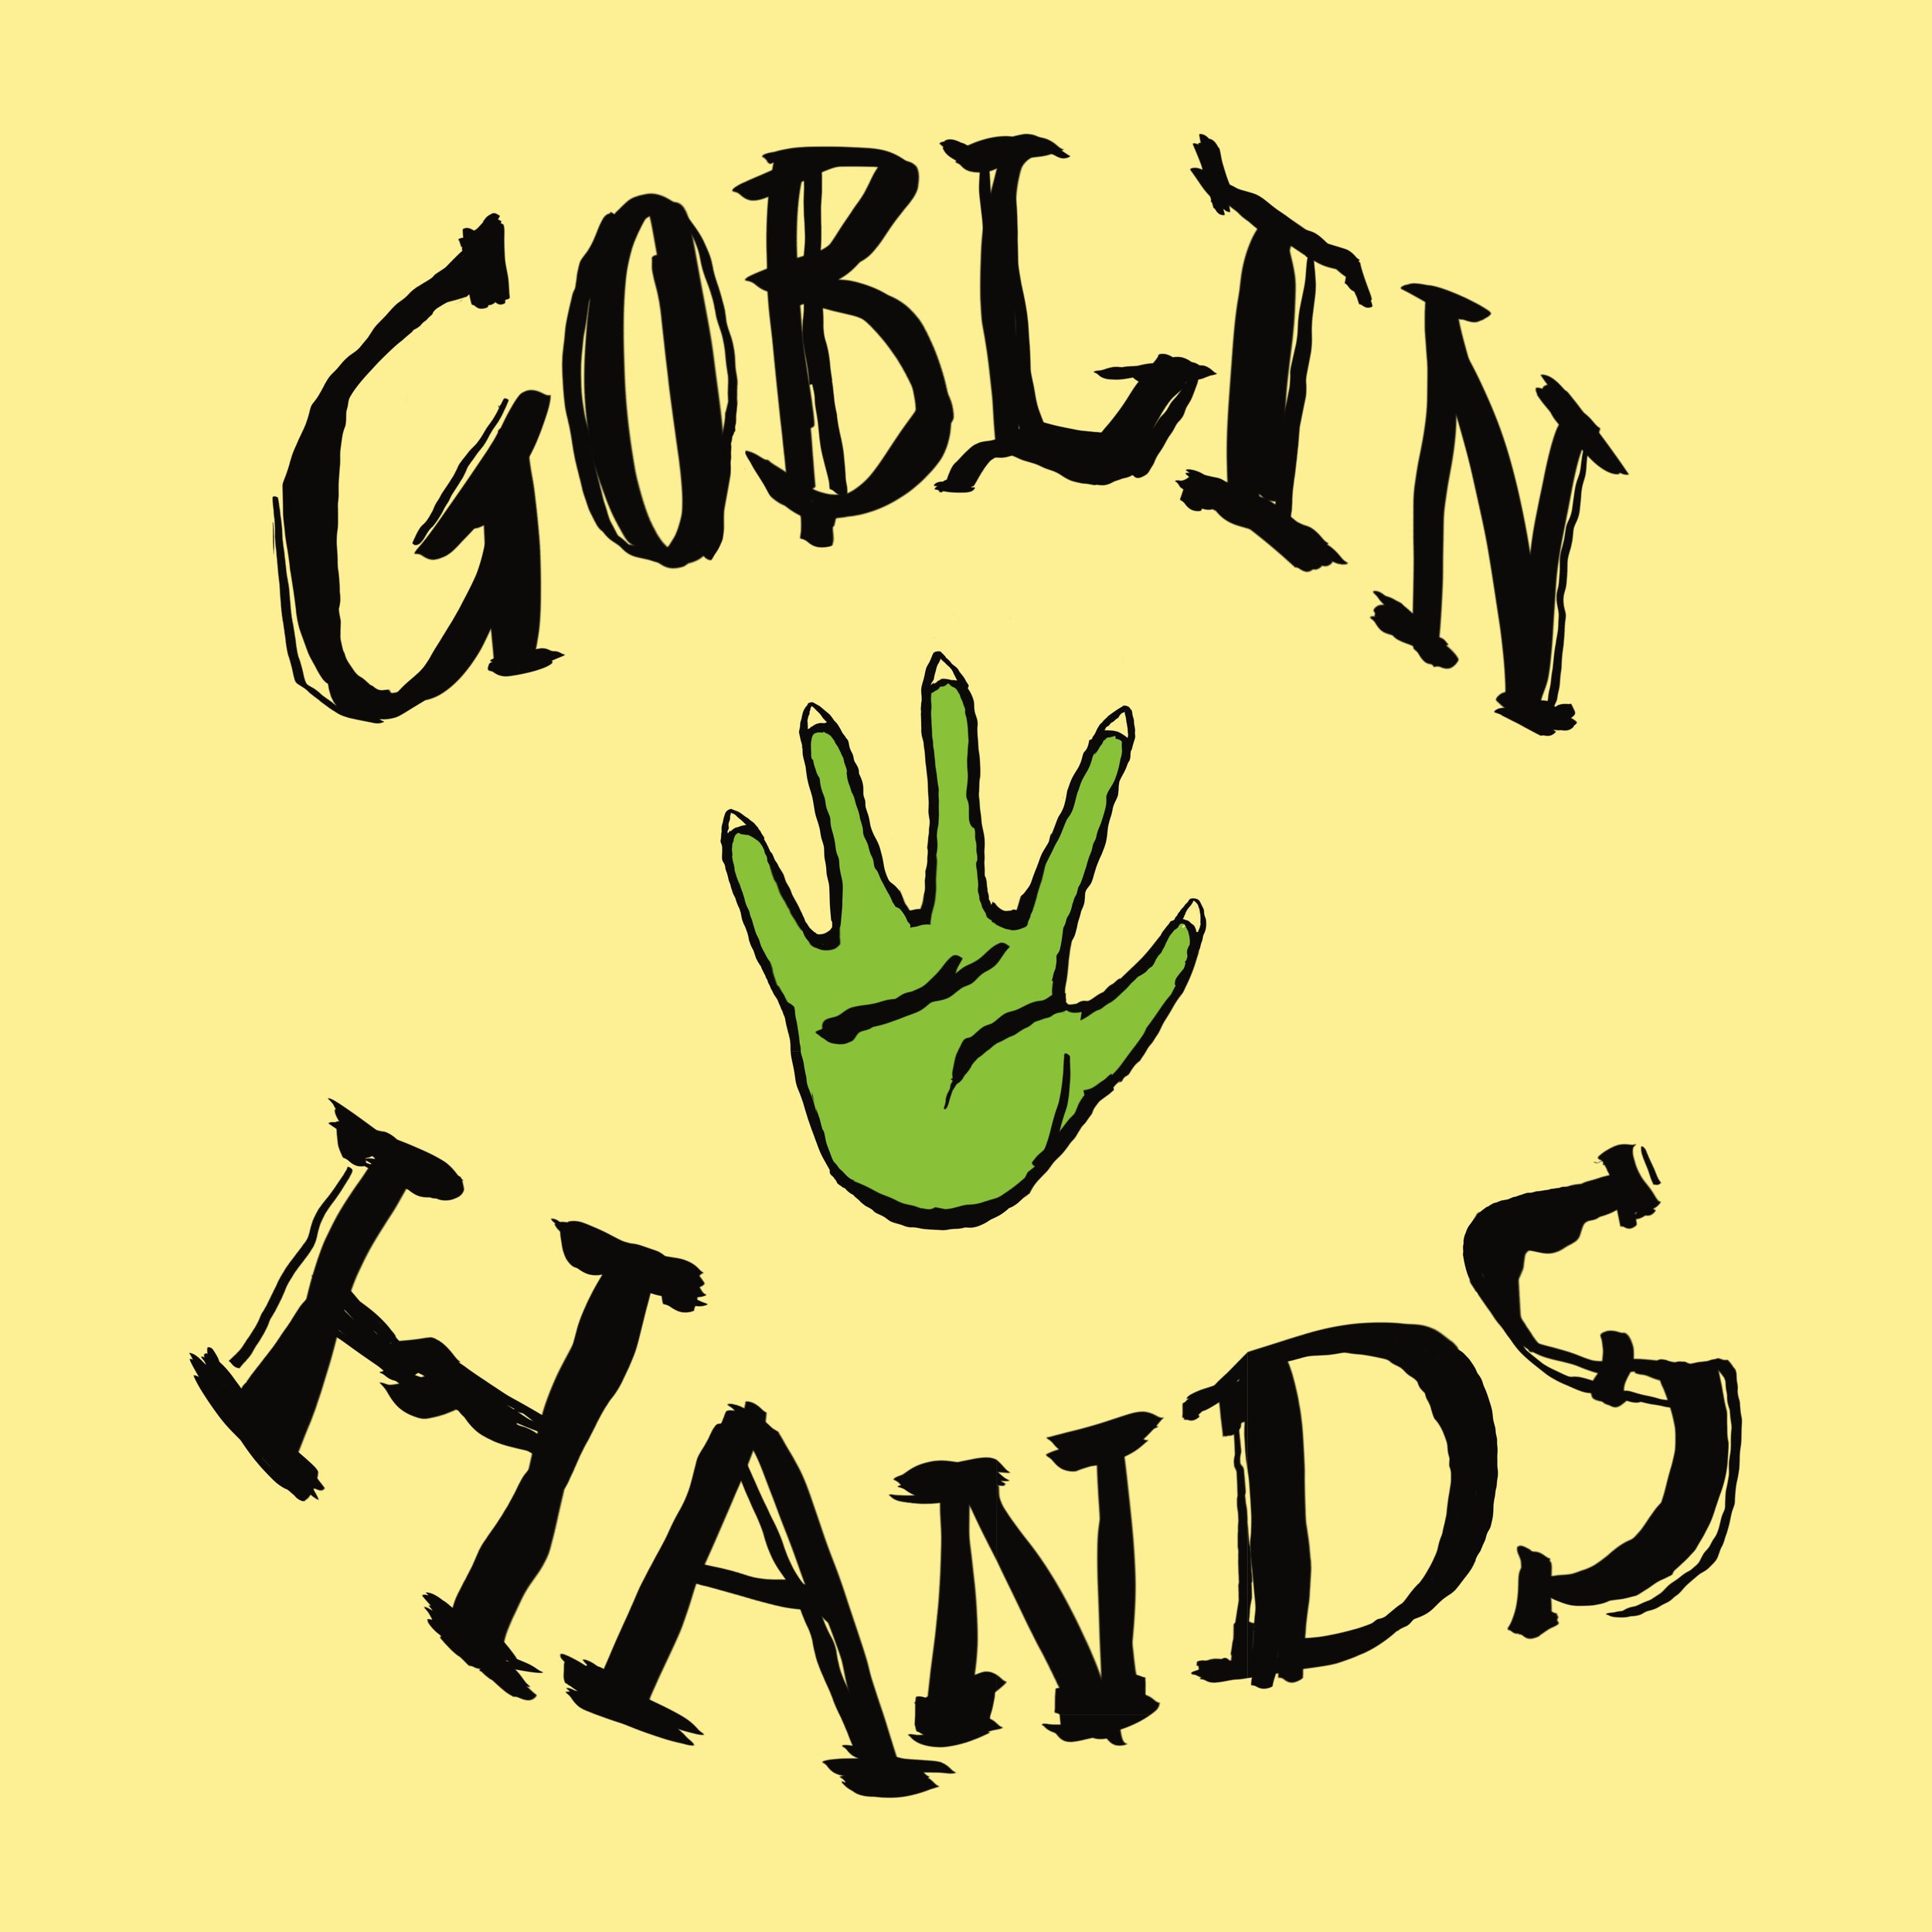 GOBLIN HANDS